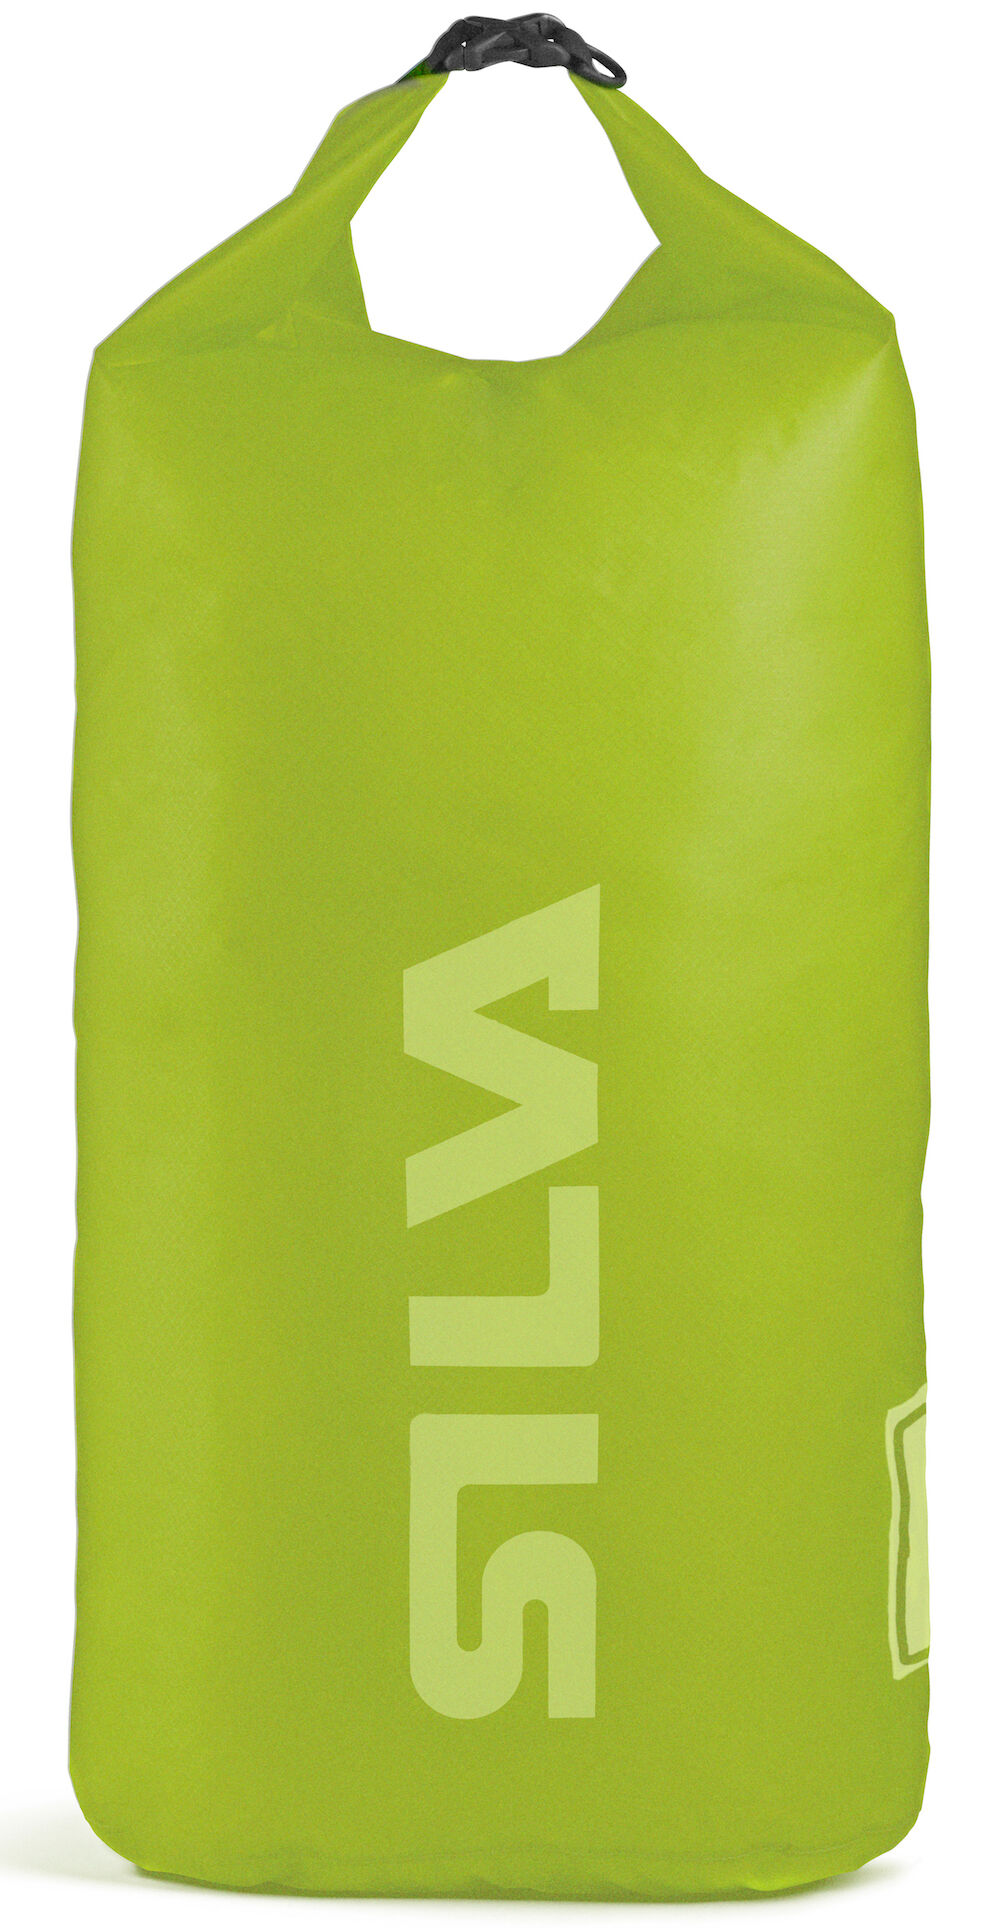 Silva - Carry Dry Bag 70D - 24L